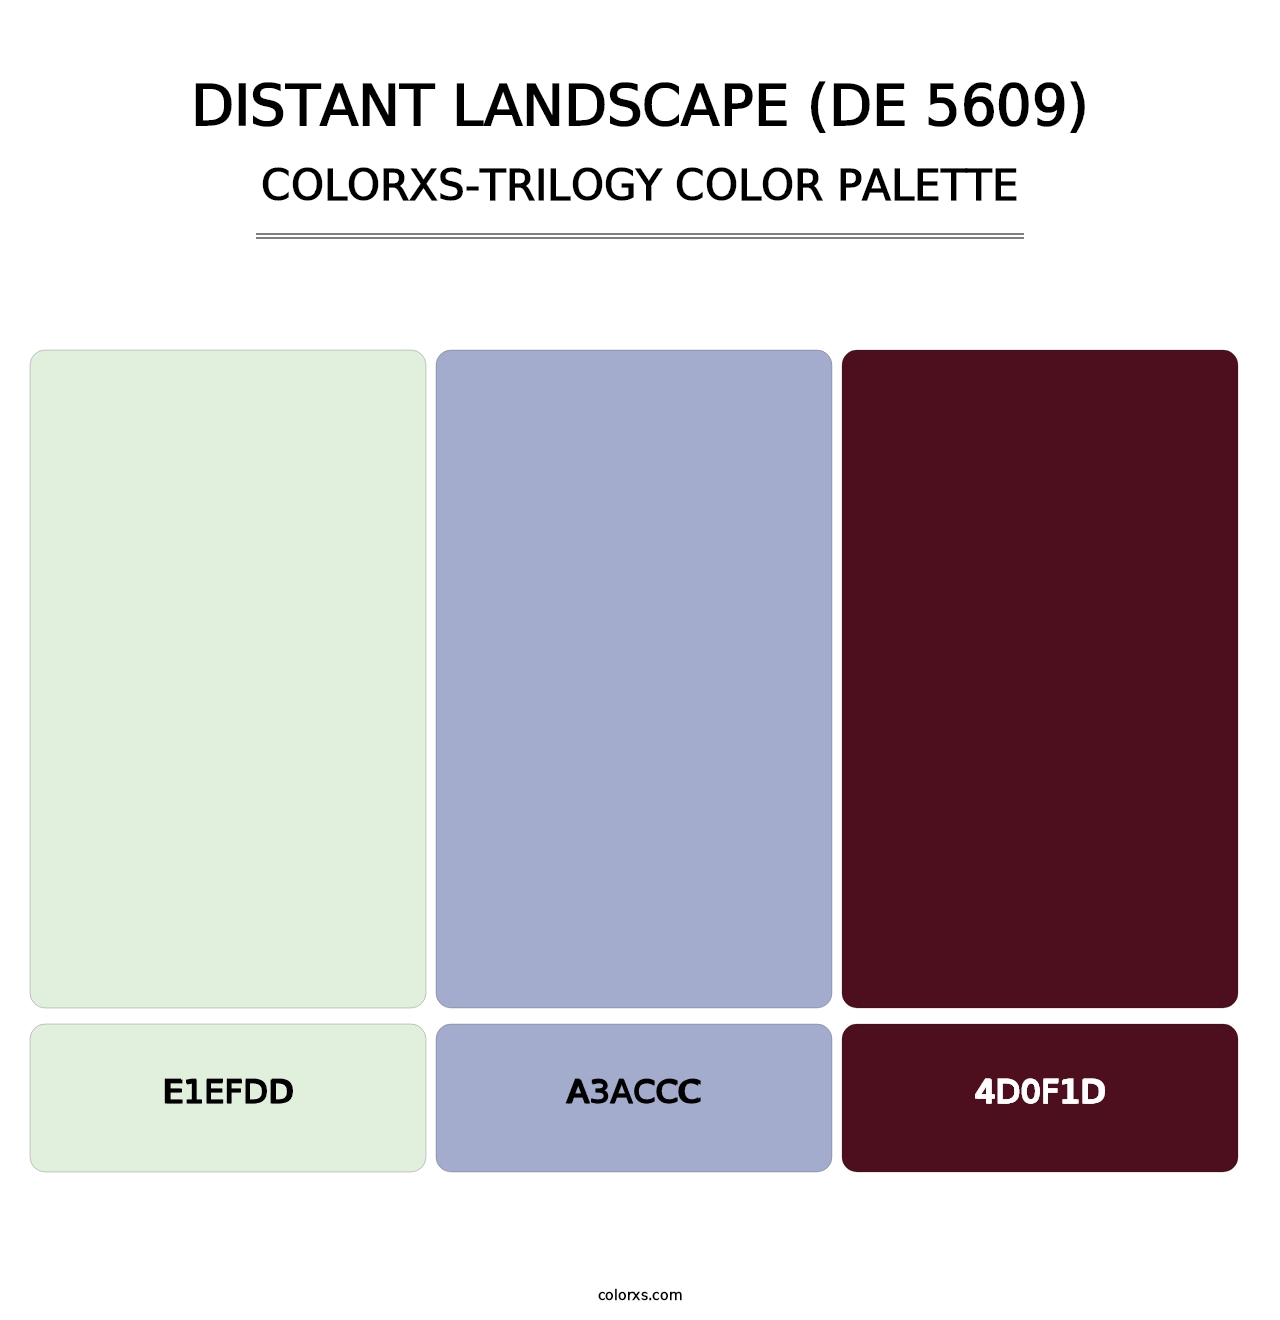 Distant Landscape (DE 5609) - Colorxs Trilogy Palette